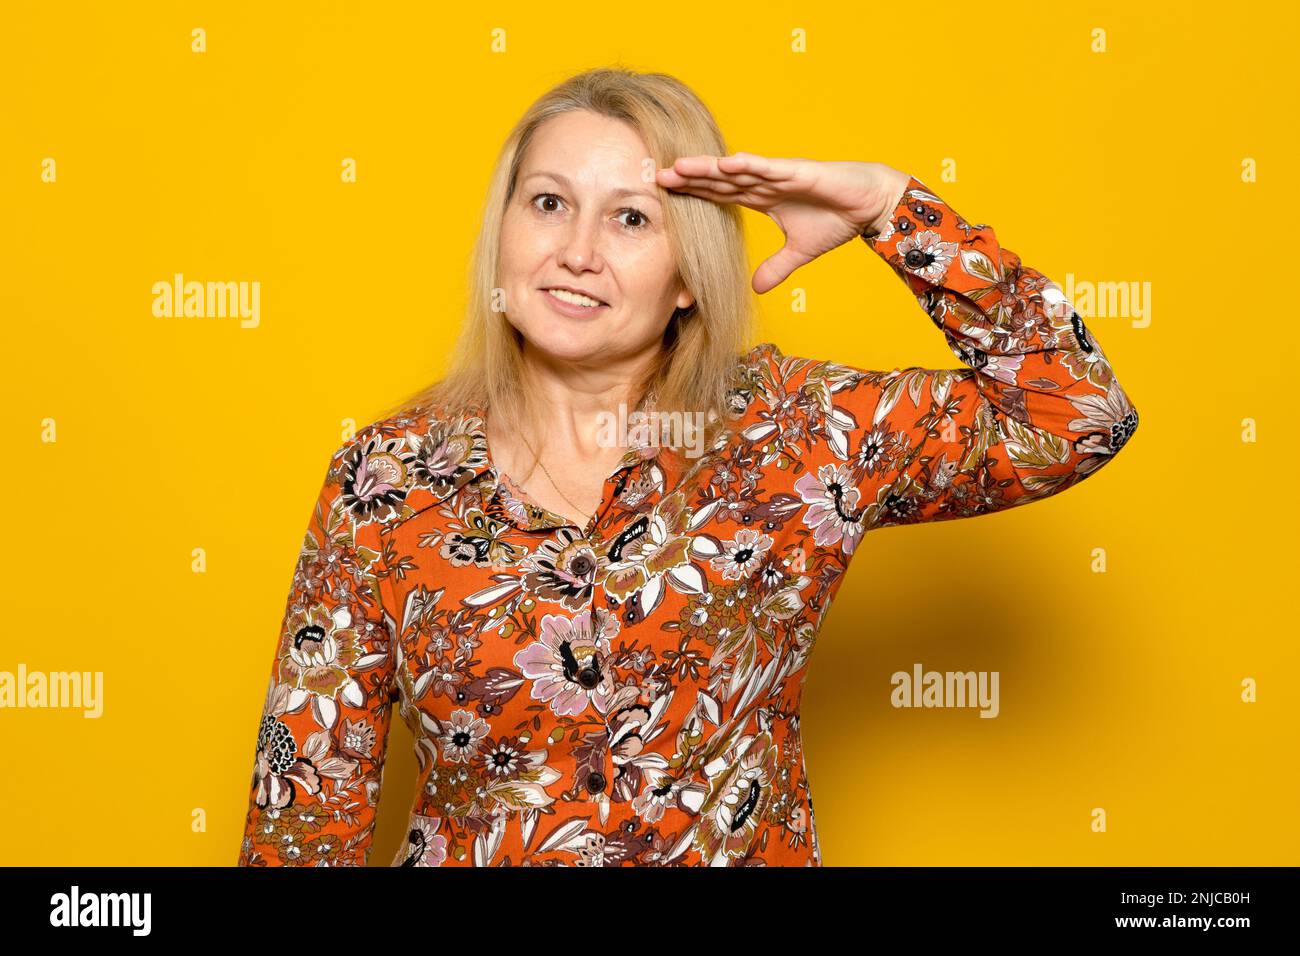 Weiße blonde Frau in einem gemusterten Kleid, die den Militärsalut abseits des gelben Hintergrunds macht, erfüllt die Heimat. Stockfoto